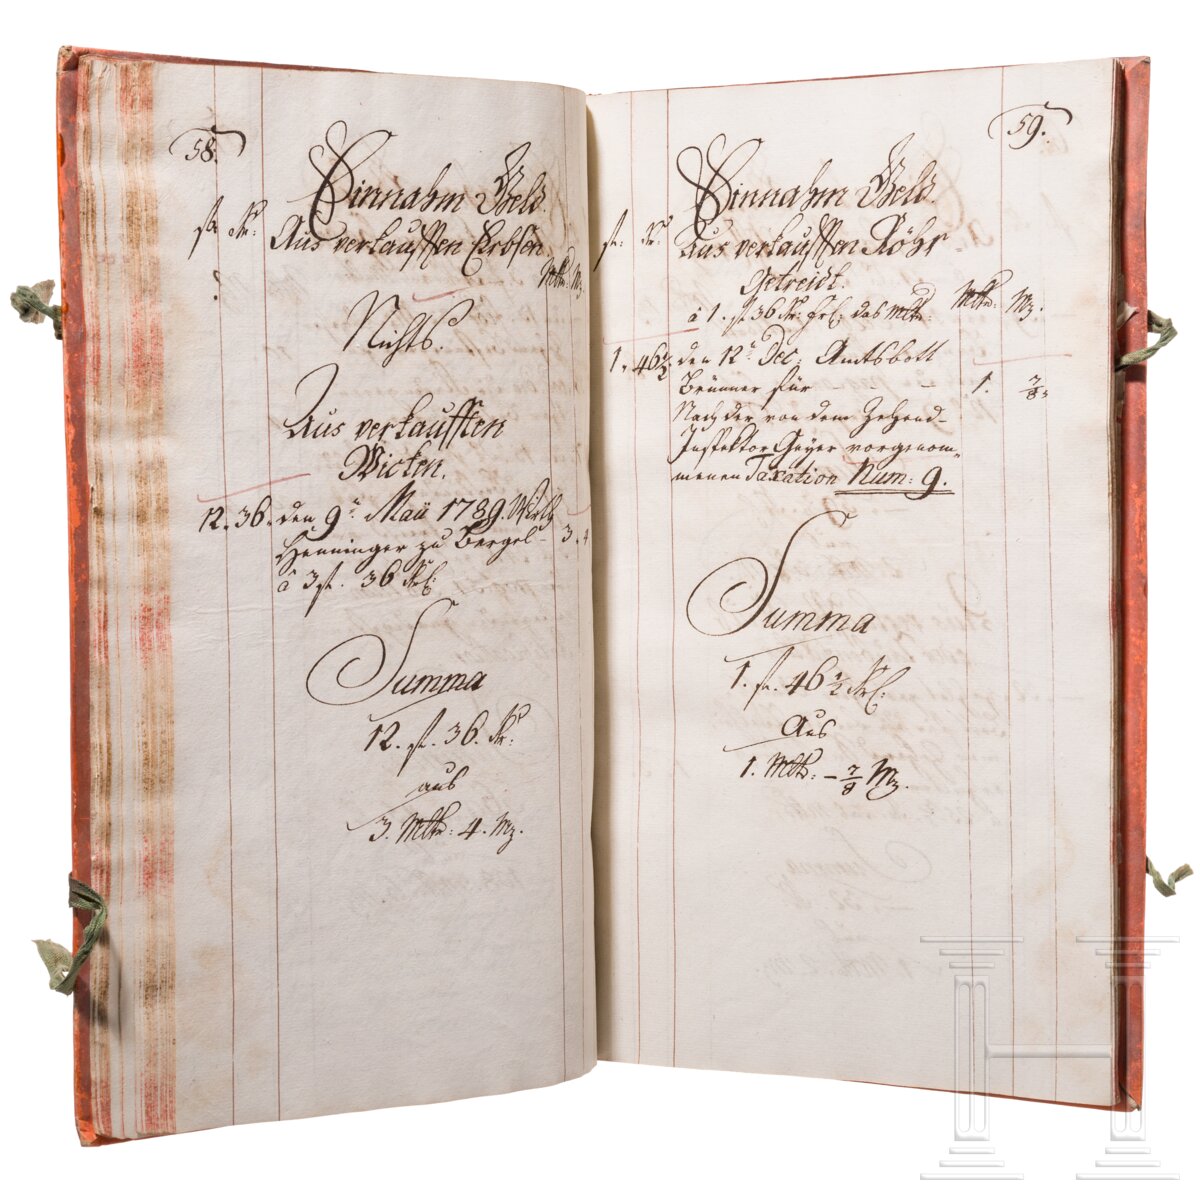 Rechnungsbuch des Juliusspitals in Würzburg für die Jahre 1789/90 - Image 4 of 5